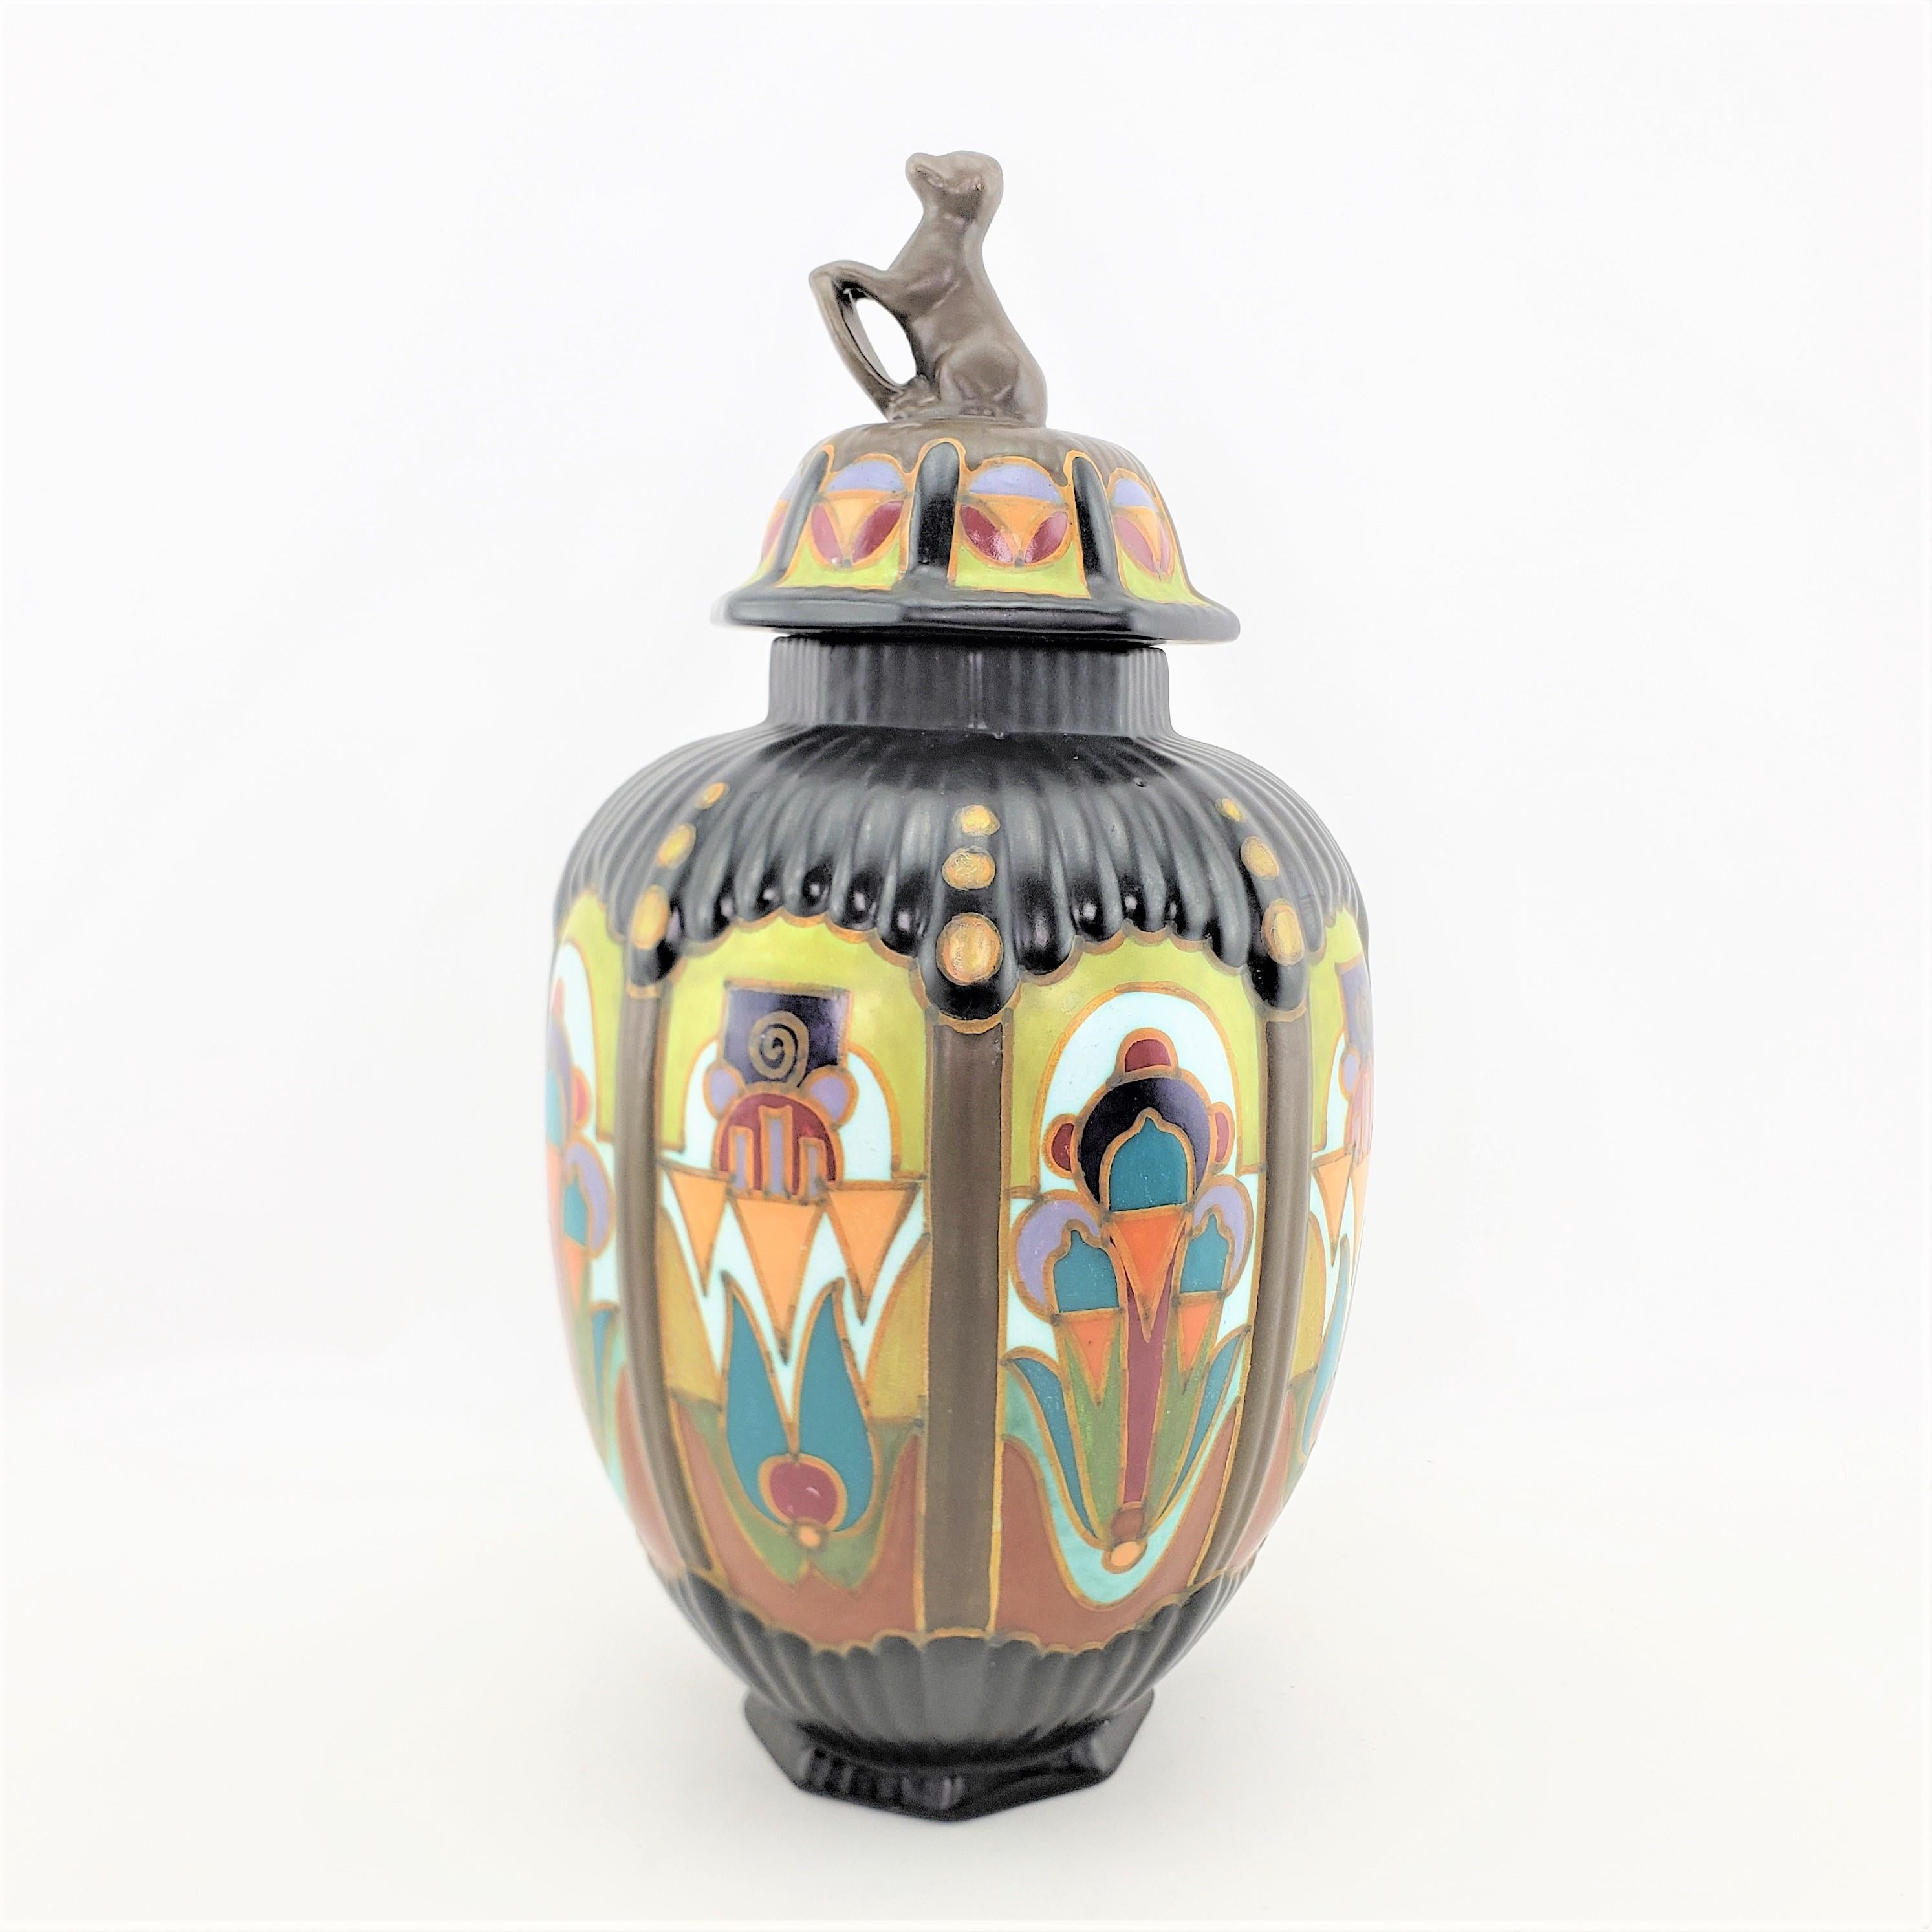 Ce grand vase ou urne à couvercle en poterie d'art a été fabriqué par Gouda en Hollande vers 1920 dans un style Art déco d'époque. Le vase à couvercle est doté d'un rebord et d'une base octogonale avec des côtés nervurés. Le corps du vase est